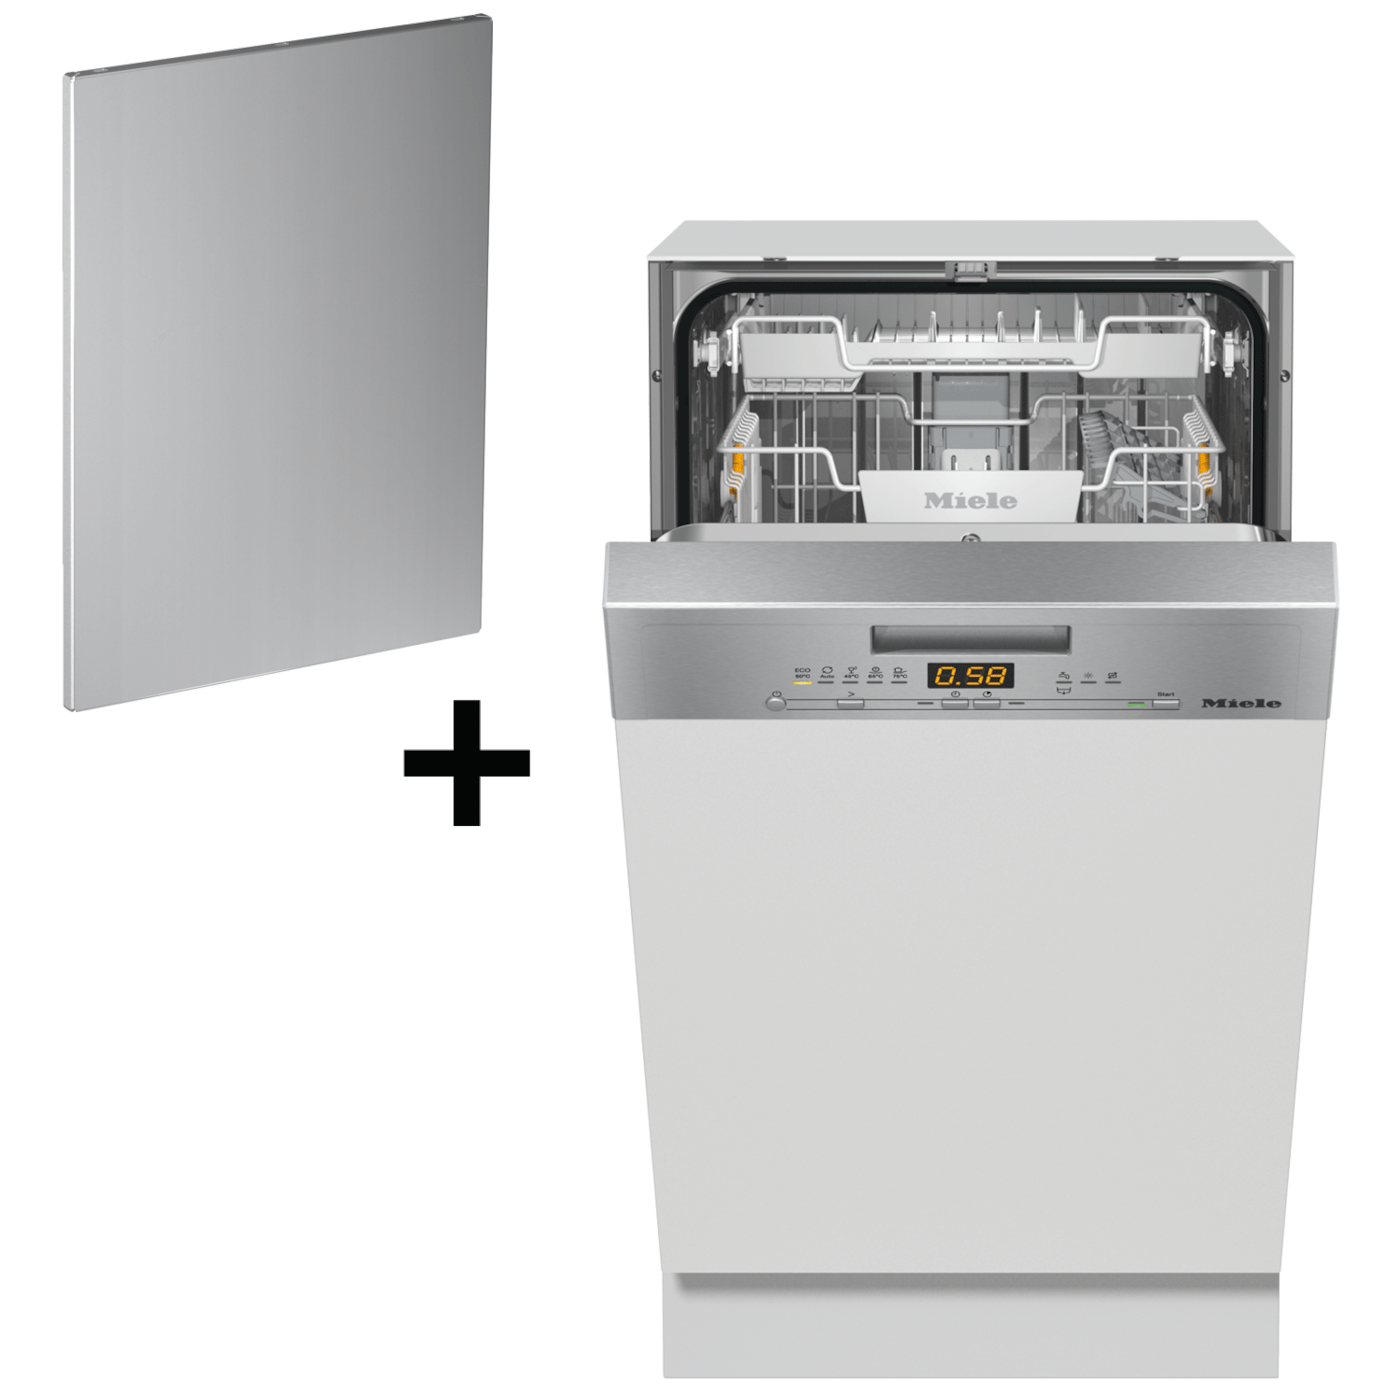 【6月頃入荷予定】【ドアキットセット】食器洗い機 G 5434 SCi（ステンレス/45cm）(送料27500込) product photo Front View ZOOM